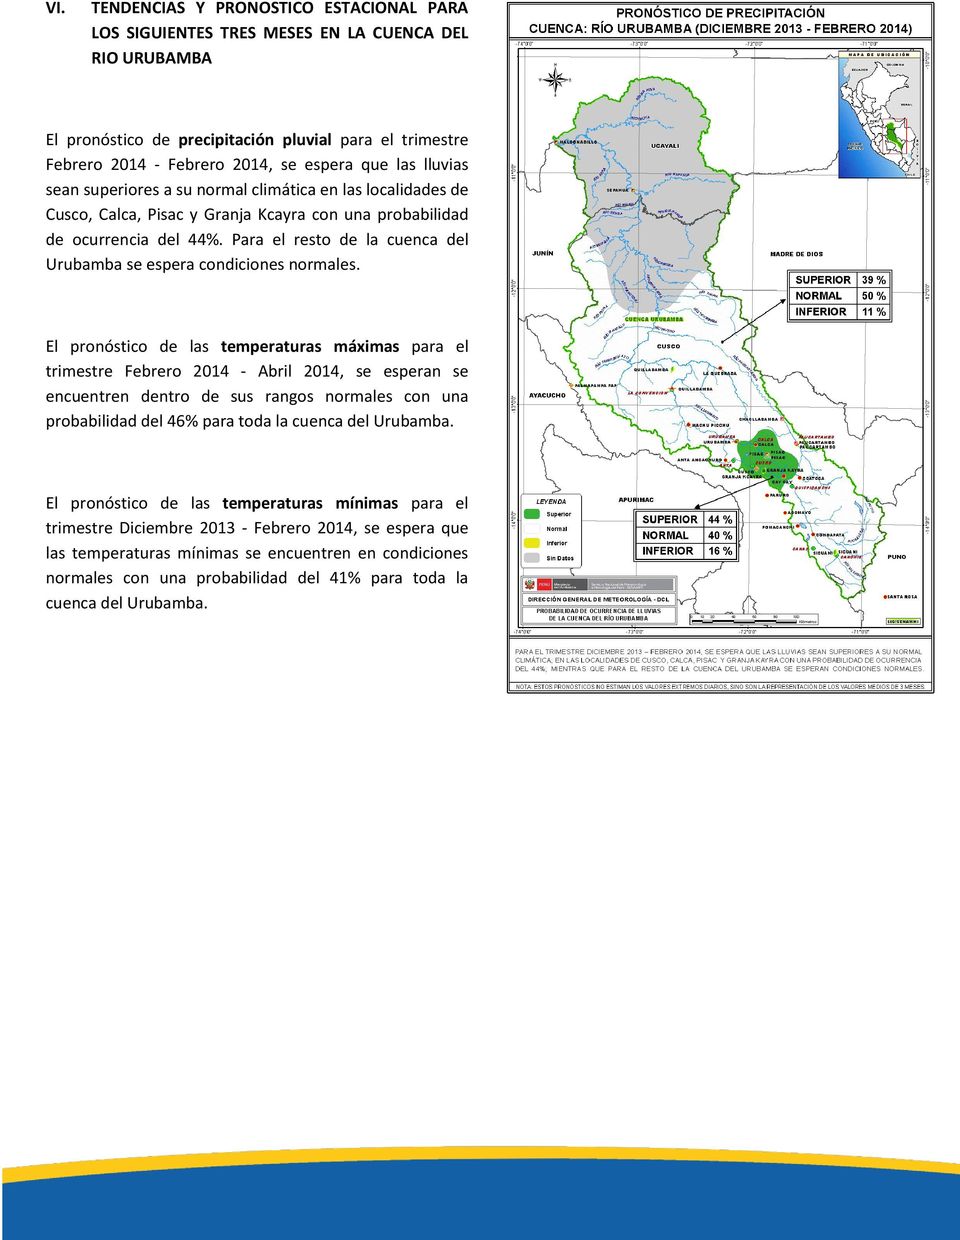 Para el resto de la cuenca del Urubamba se espera condiciones normales.